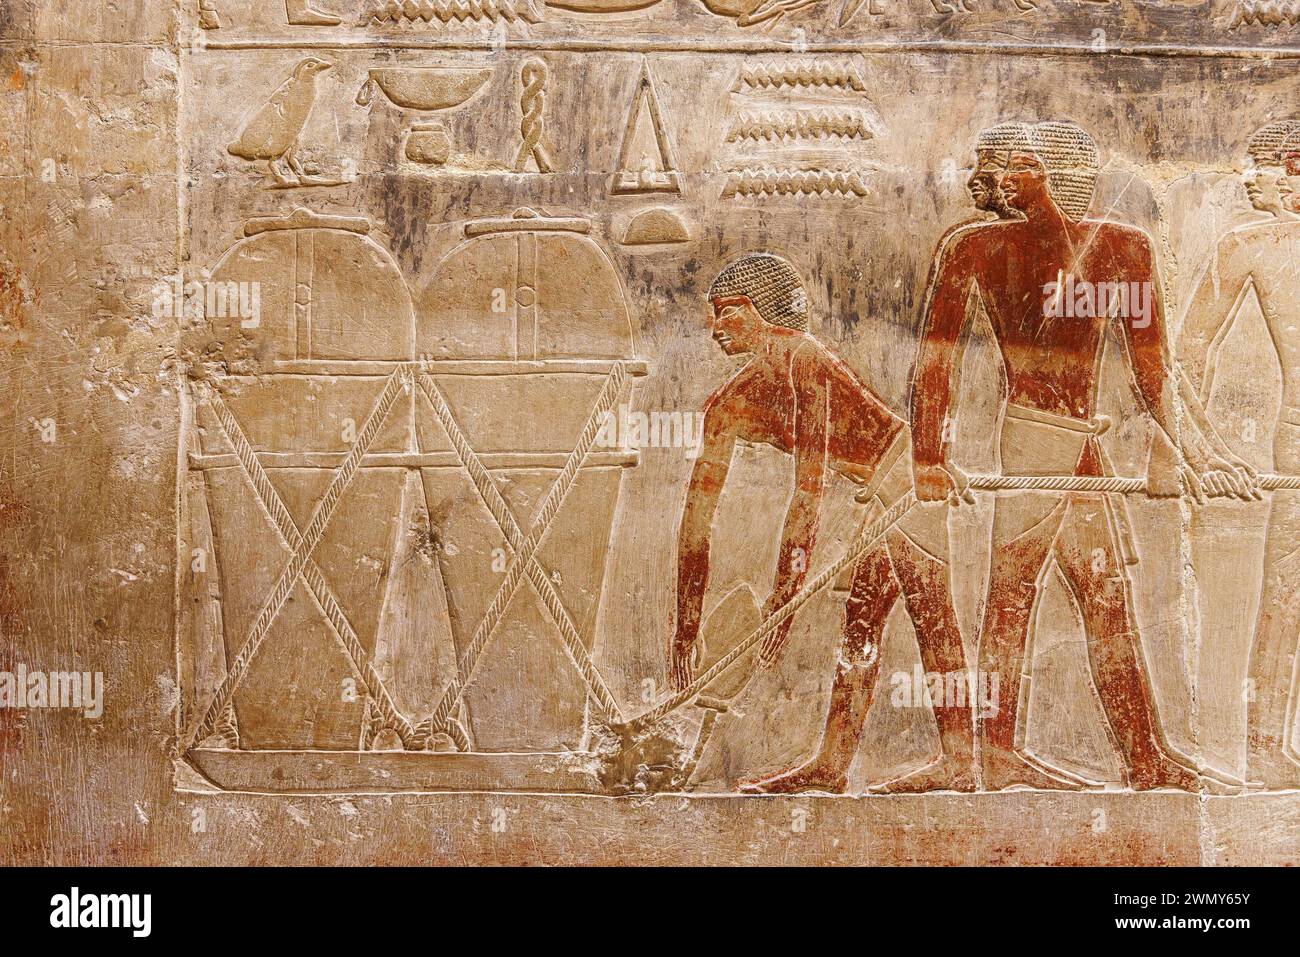 Ägypten, Kairo, Sakkara, Memphis und seine Nekropole, die Pyramidenfelder von Gizeh bis Dahshur, die von der UNESCO zum Weltkulturerbe erklärt wurden, Kagemni-Grab, Glastransport Stockfoto